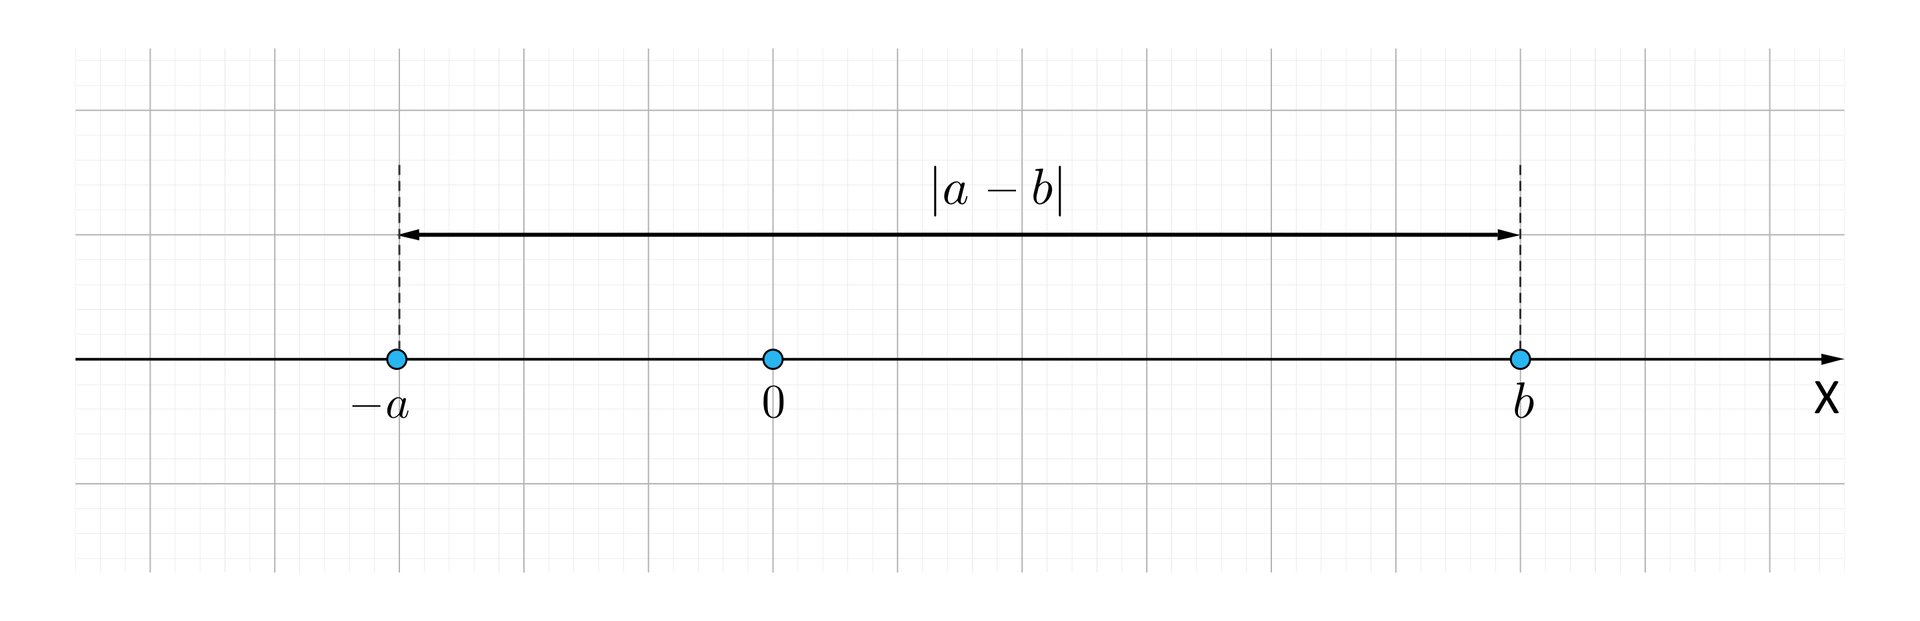 Ilustracja przedstawia oś iks na której opisano punkty minus a, zero i be. Odległość między punktami minus i be opisano jako |a−b|.